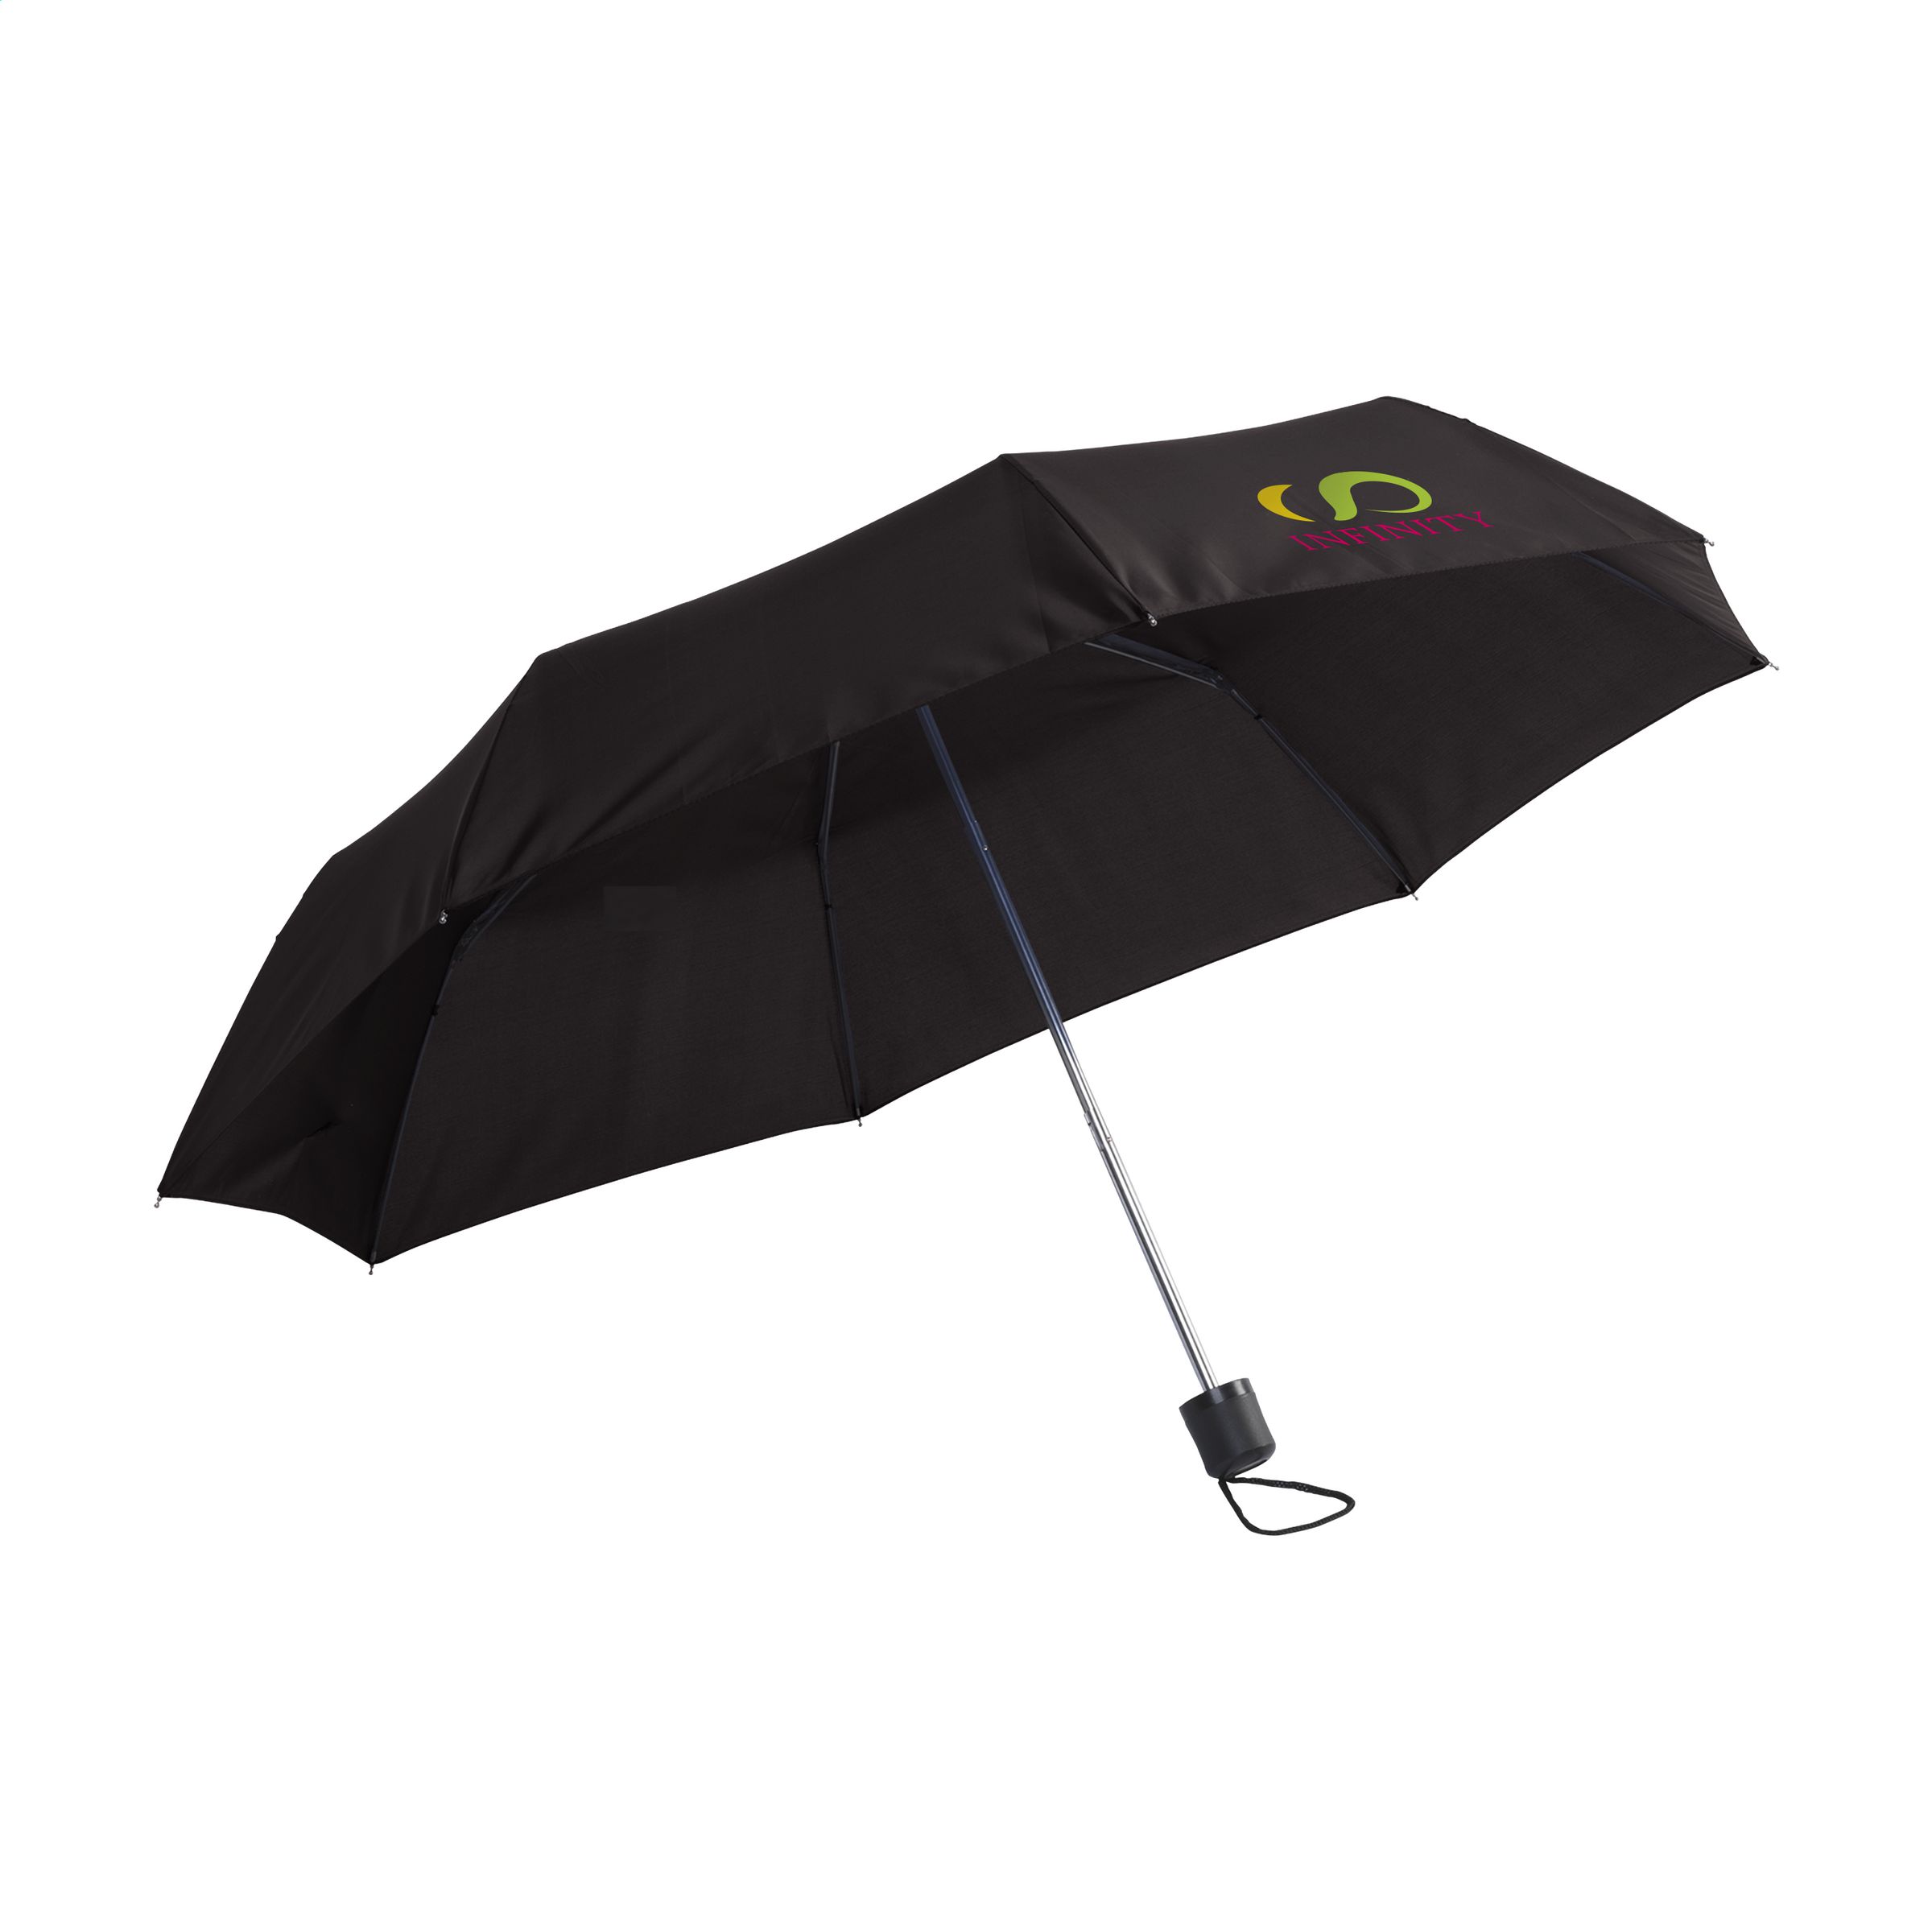 Parapluie personnalisé ultra compact 92cm - Garibaldi